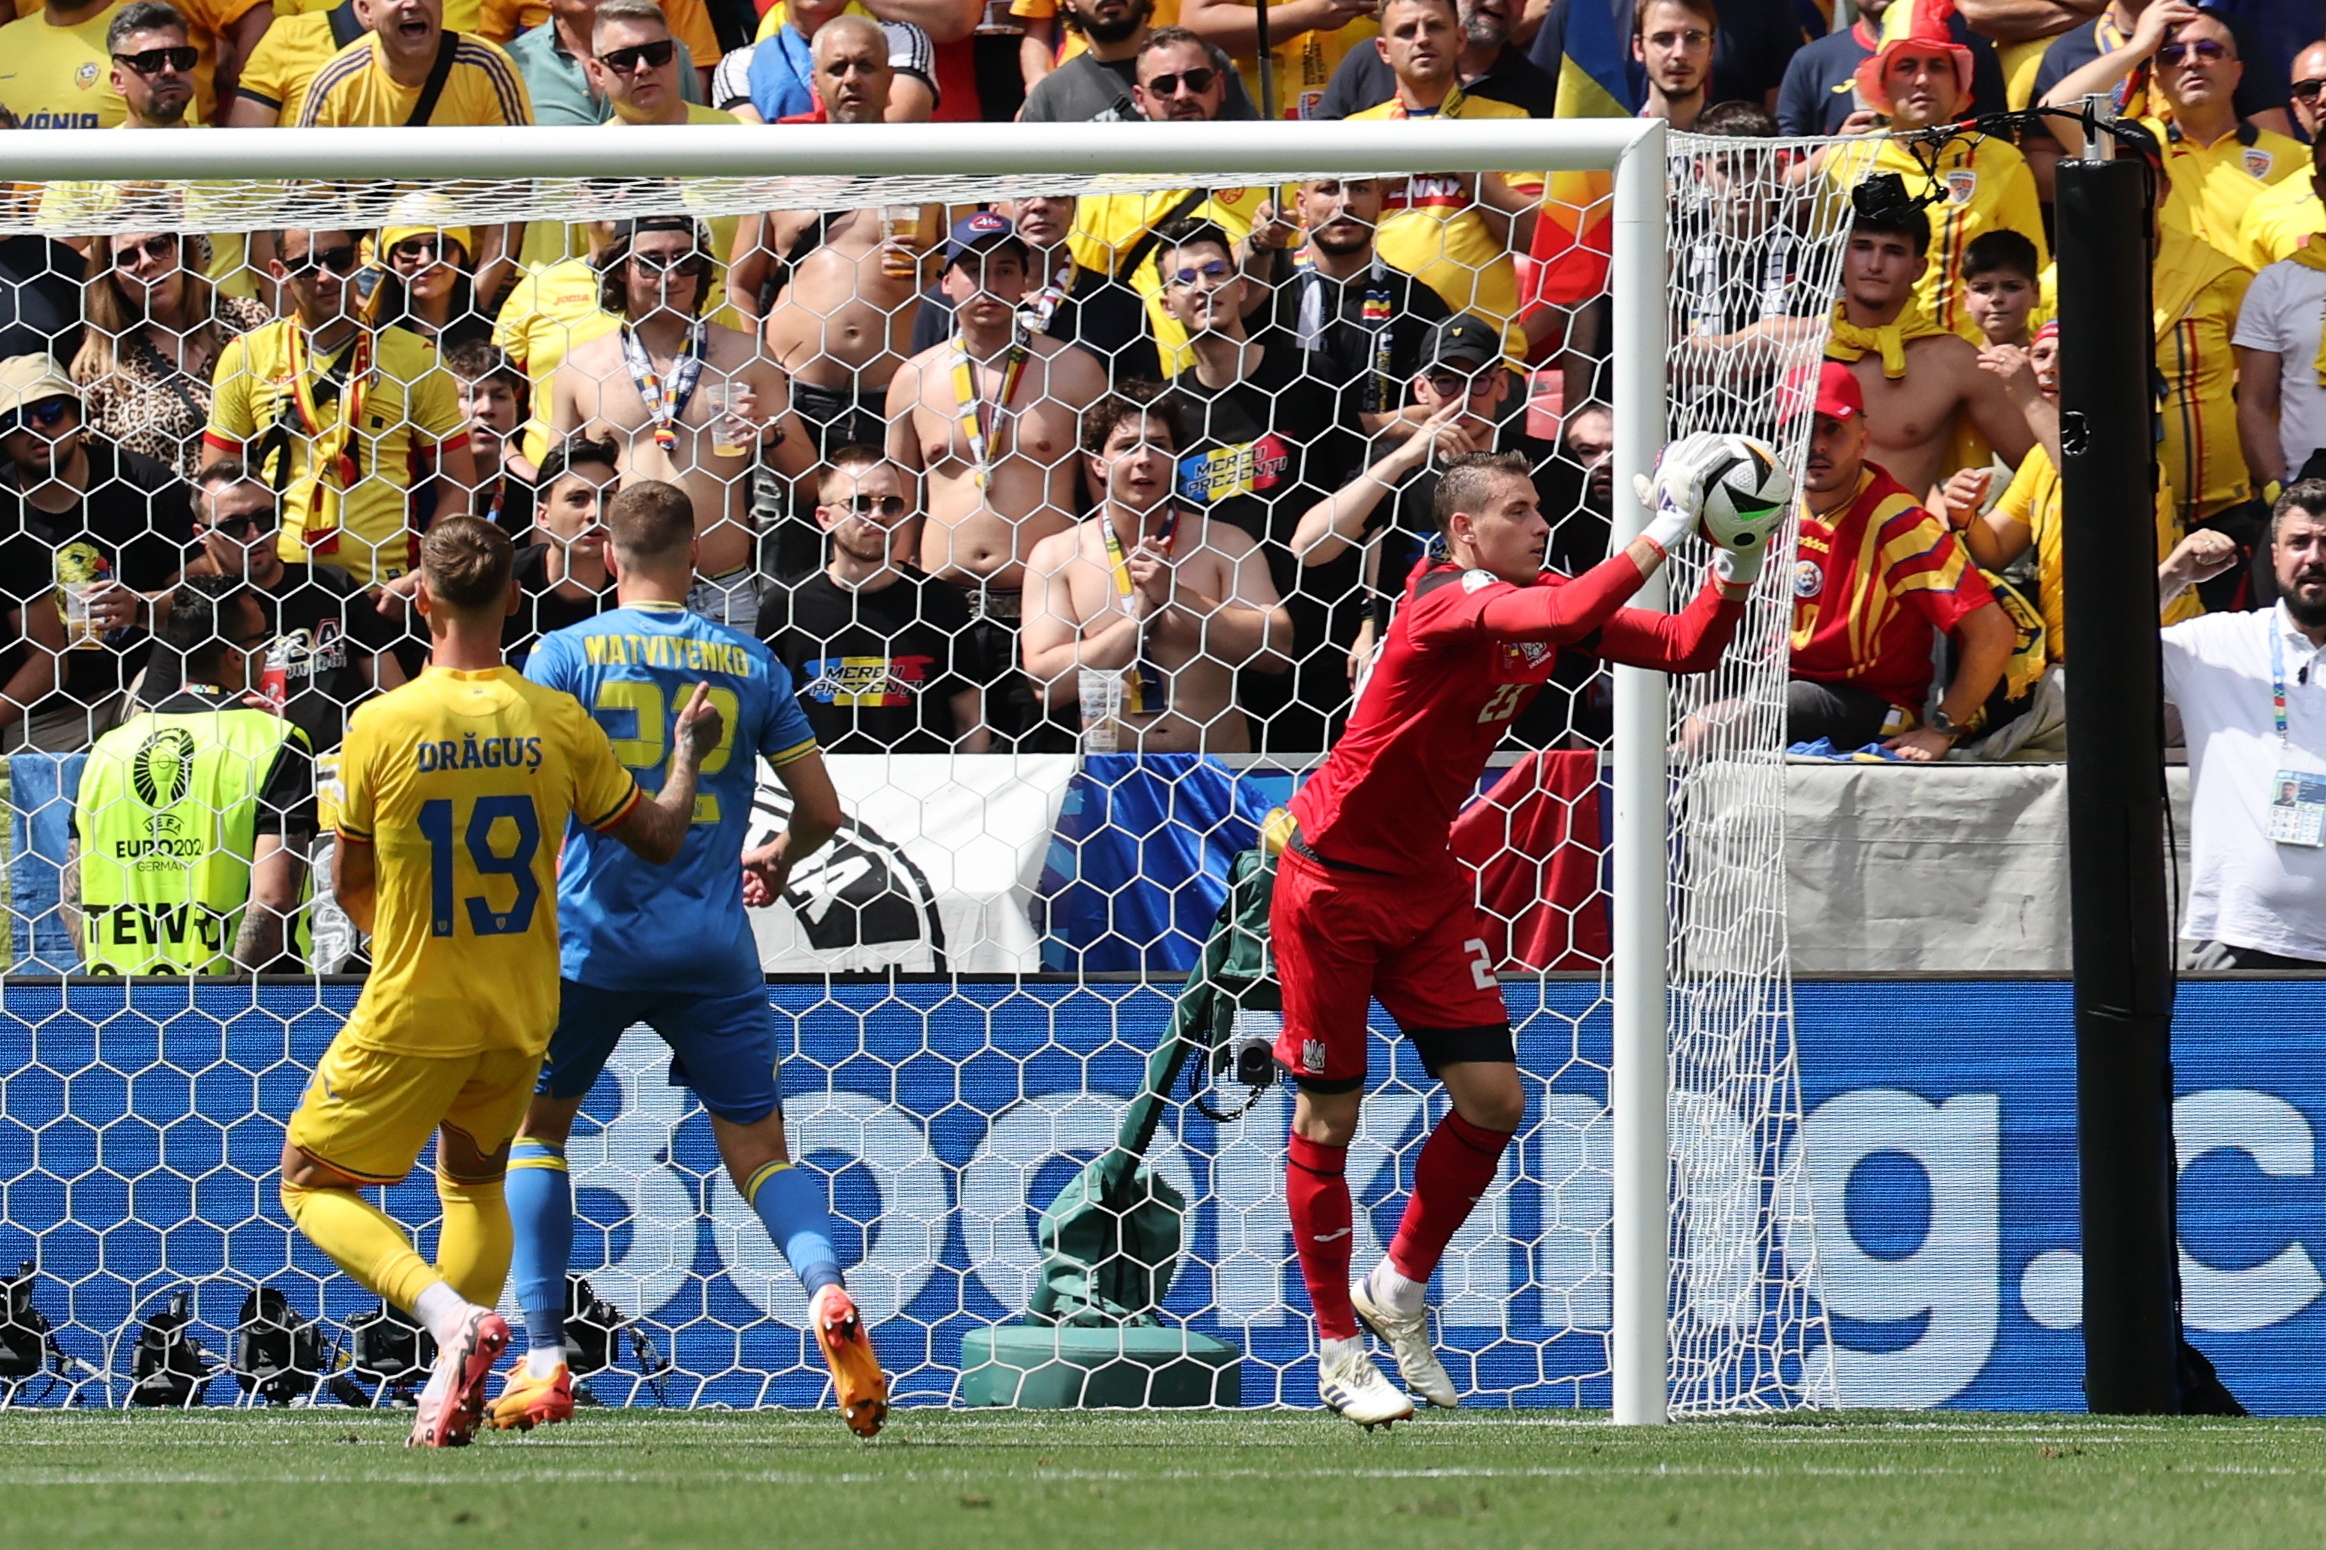 Rumanía golea a Ucrania en una nefasta tarde de Lunin (3-0)